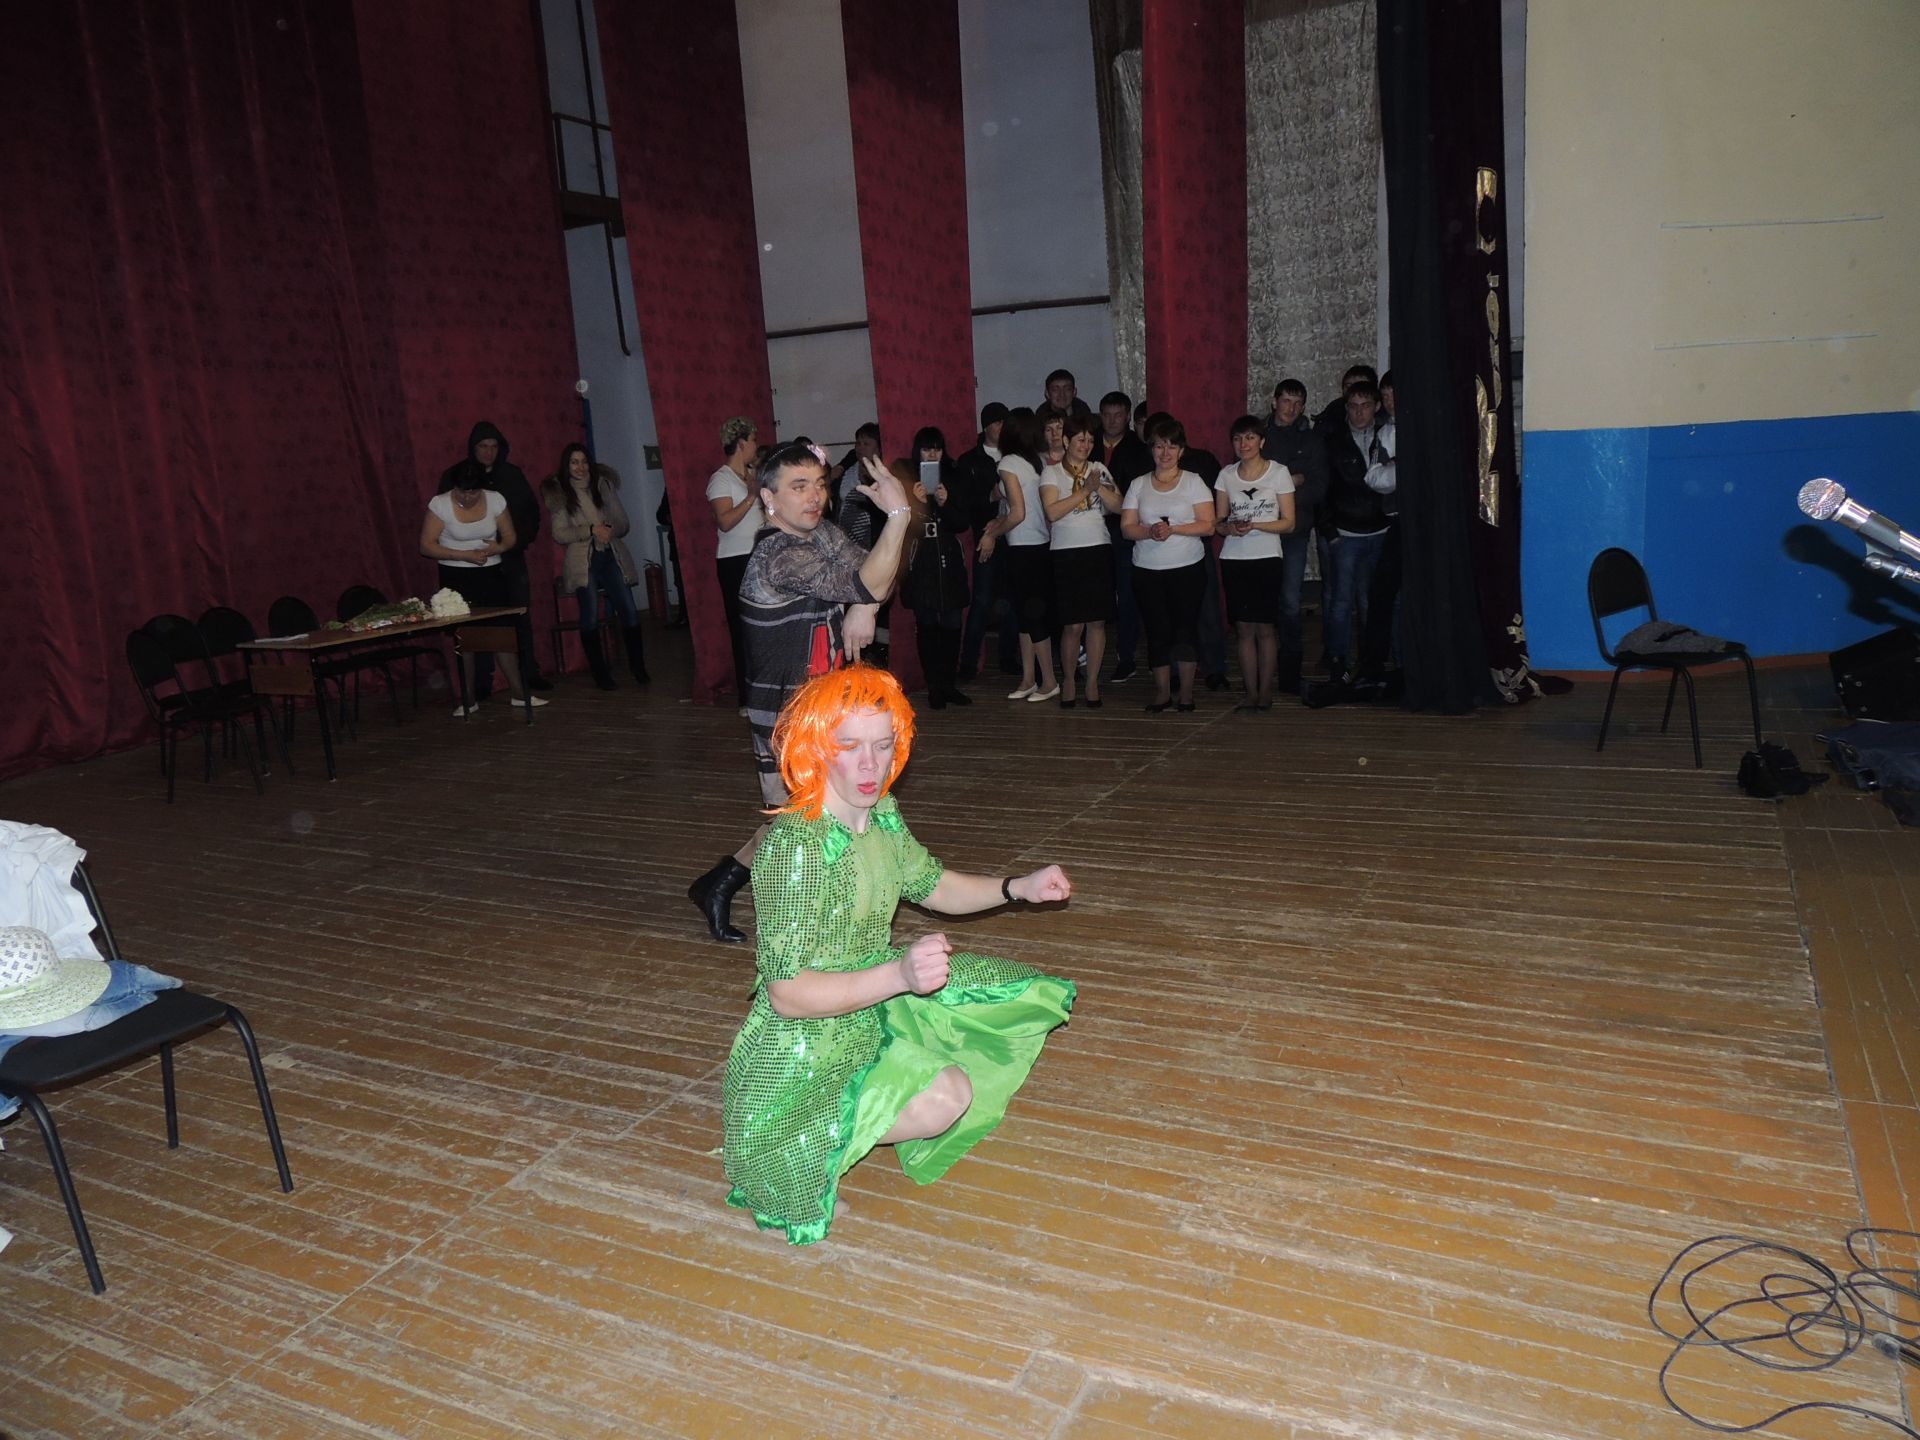 2013 год: в Шалях встретились две команды на конкурсе «А ну-ка девушки!»